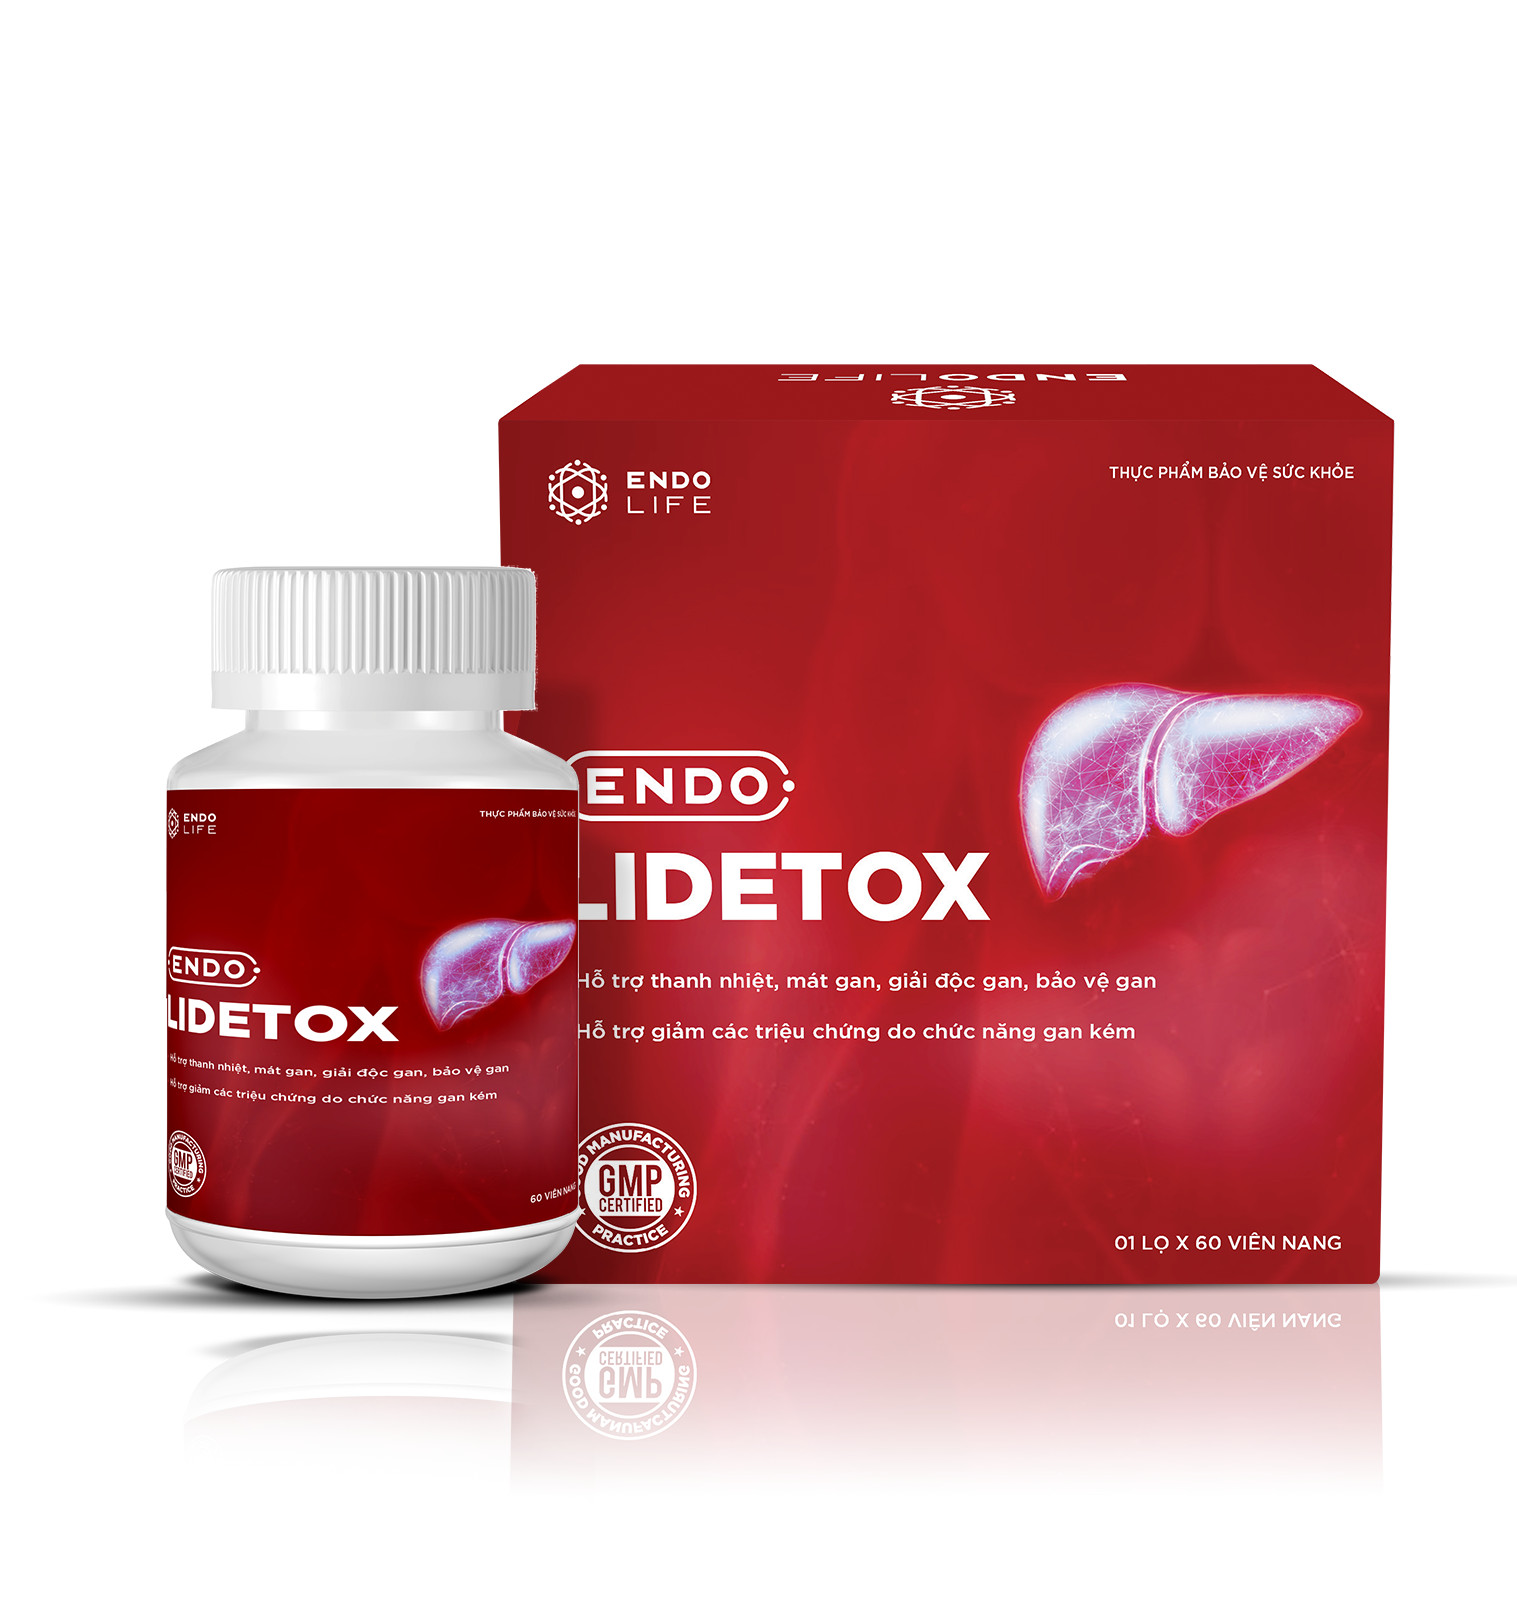 ENDO LIDETOX- Hỗ trợ điều trị các bệnh lý về gan.